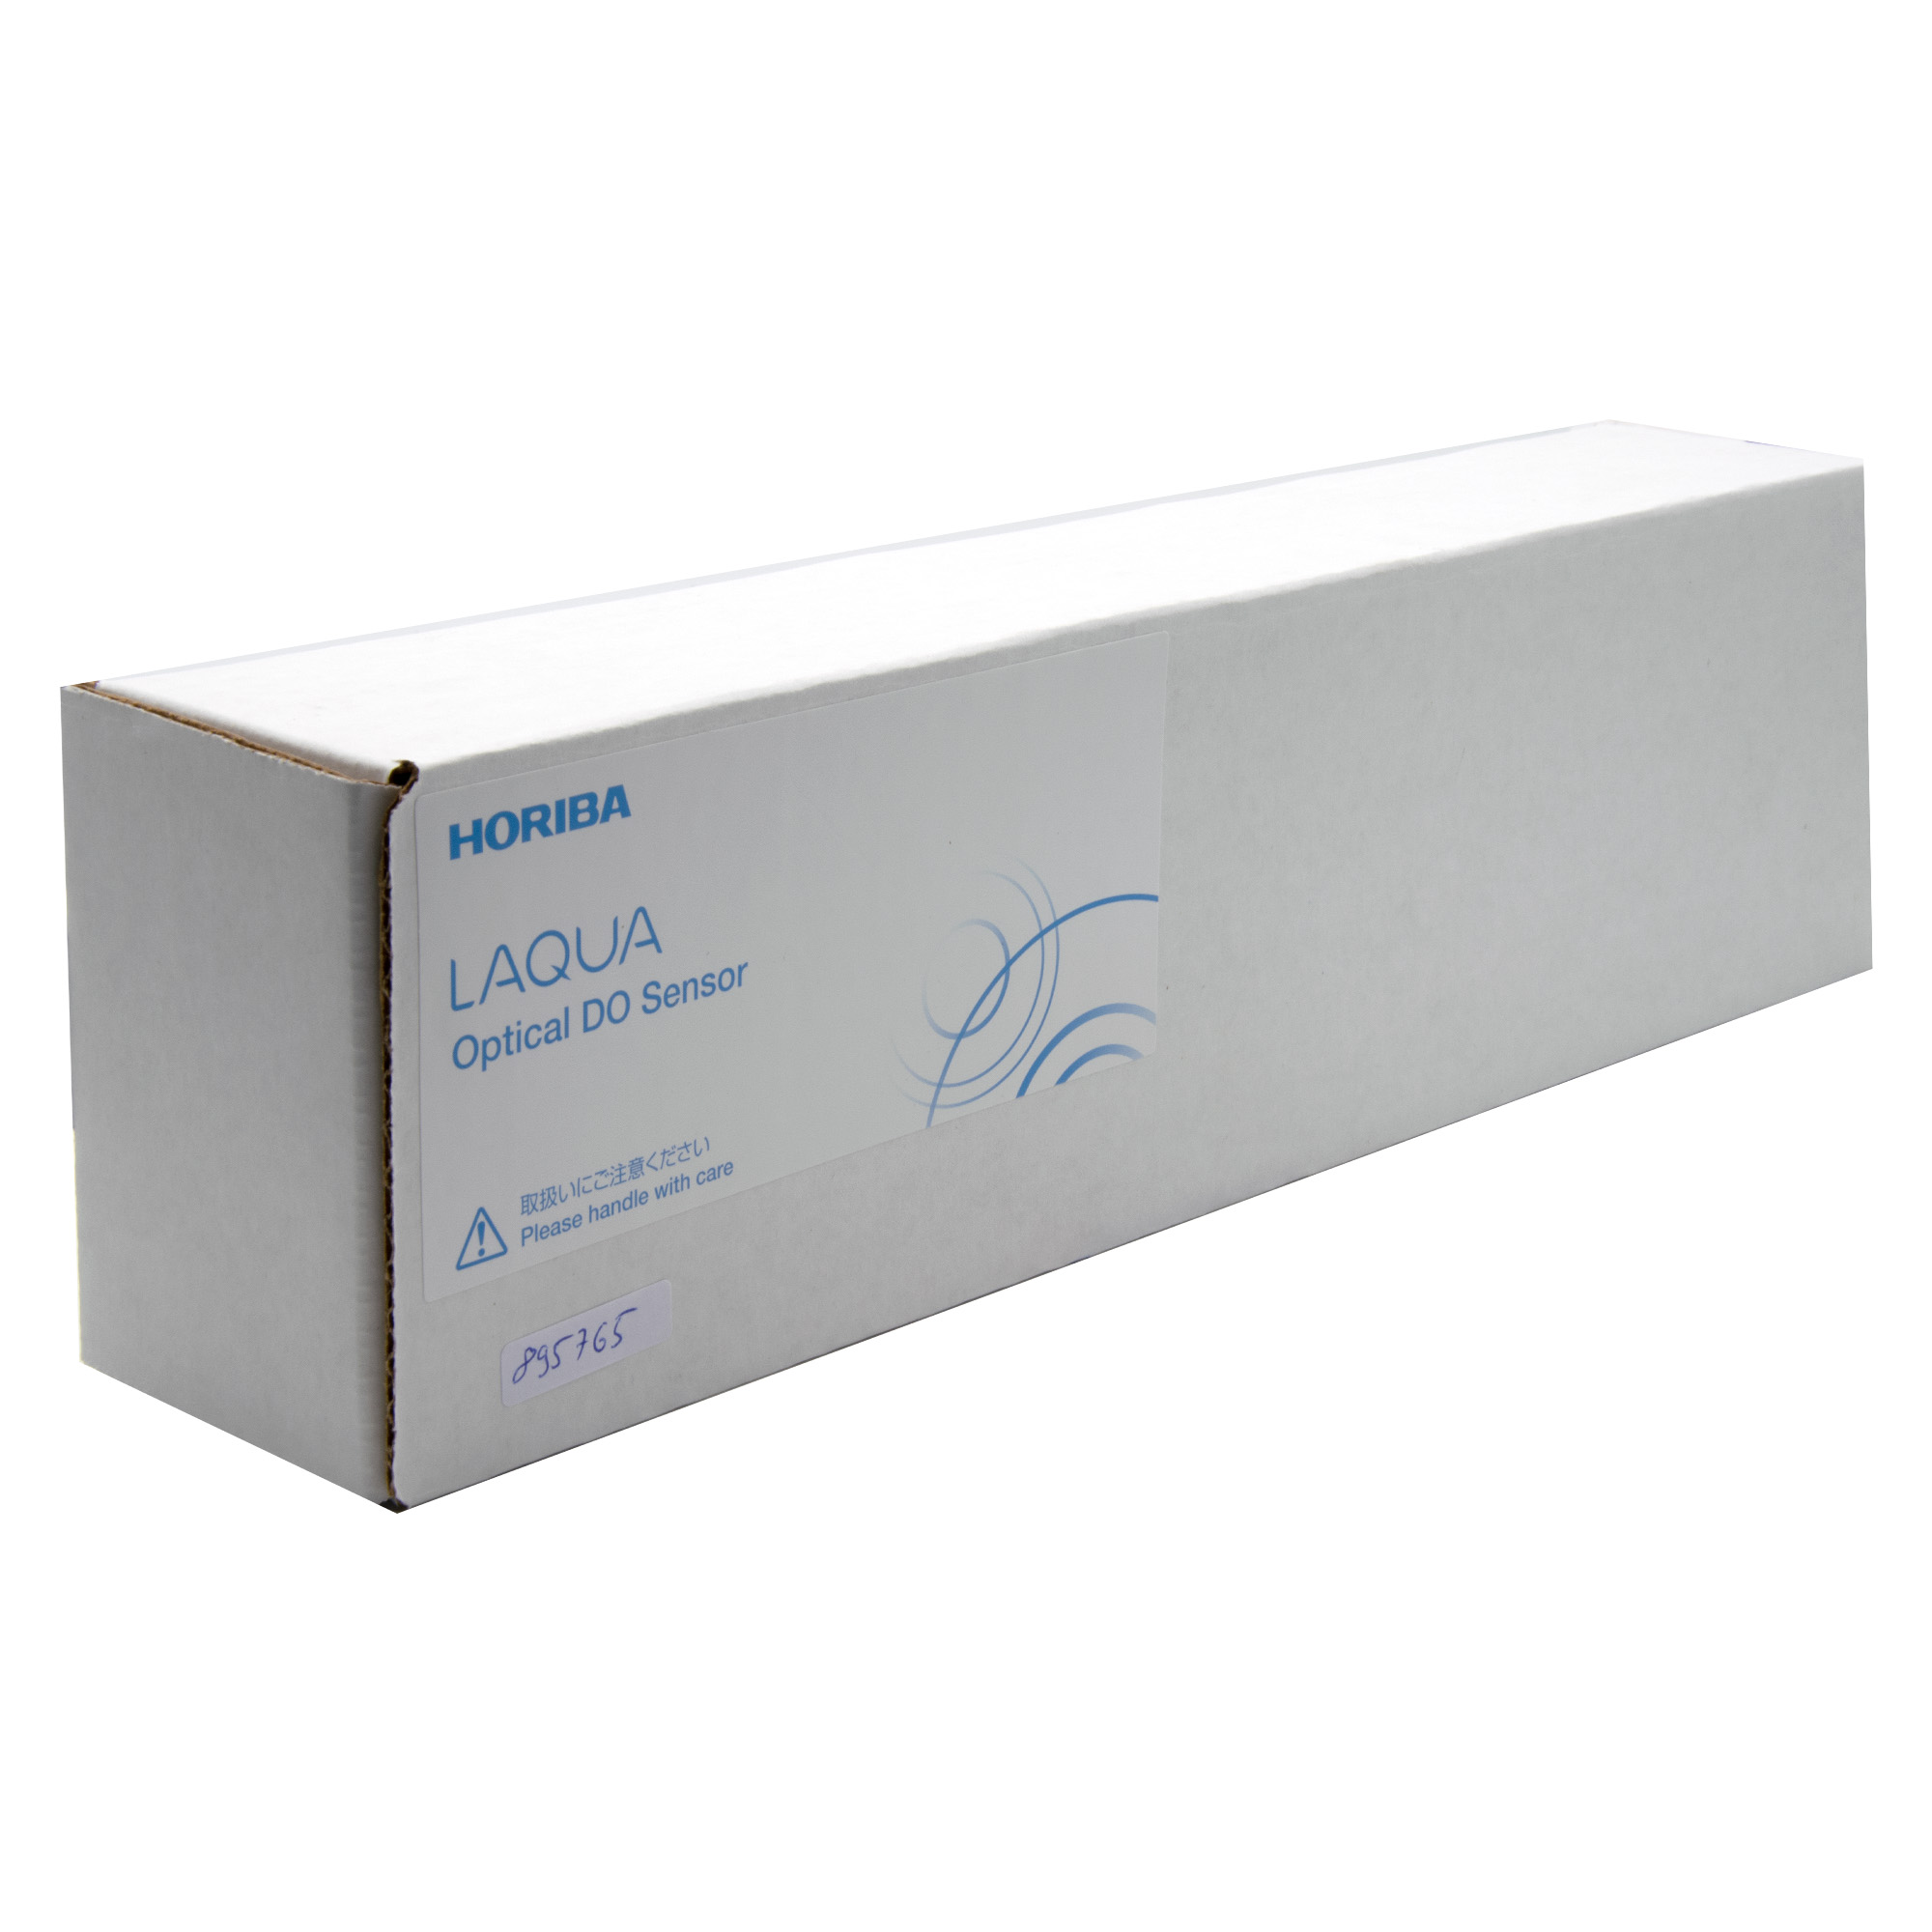 Horiba LAQUA 300-D-2 optical oxygen sensor for LAQUA 300 series